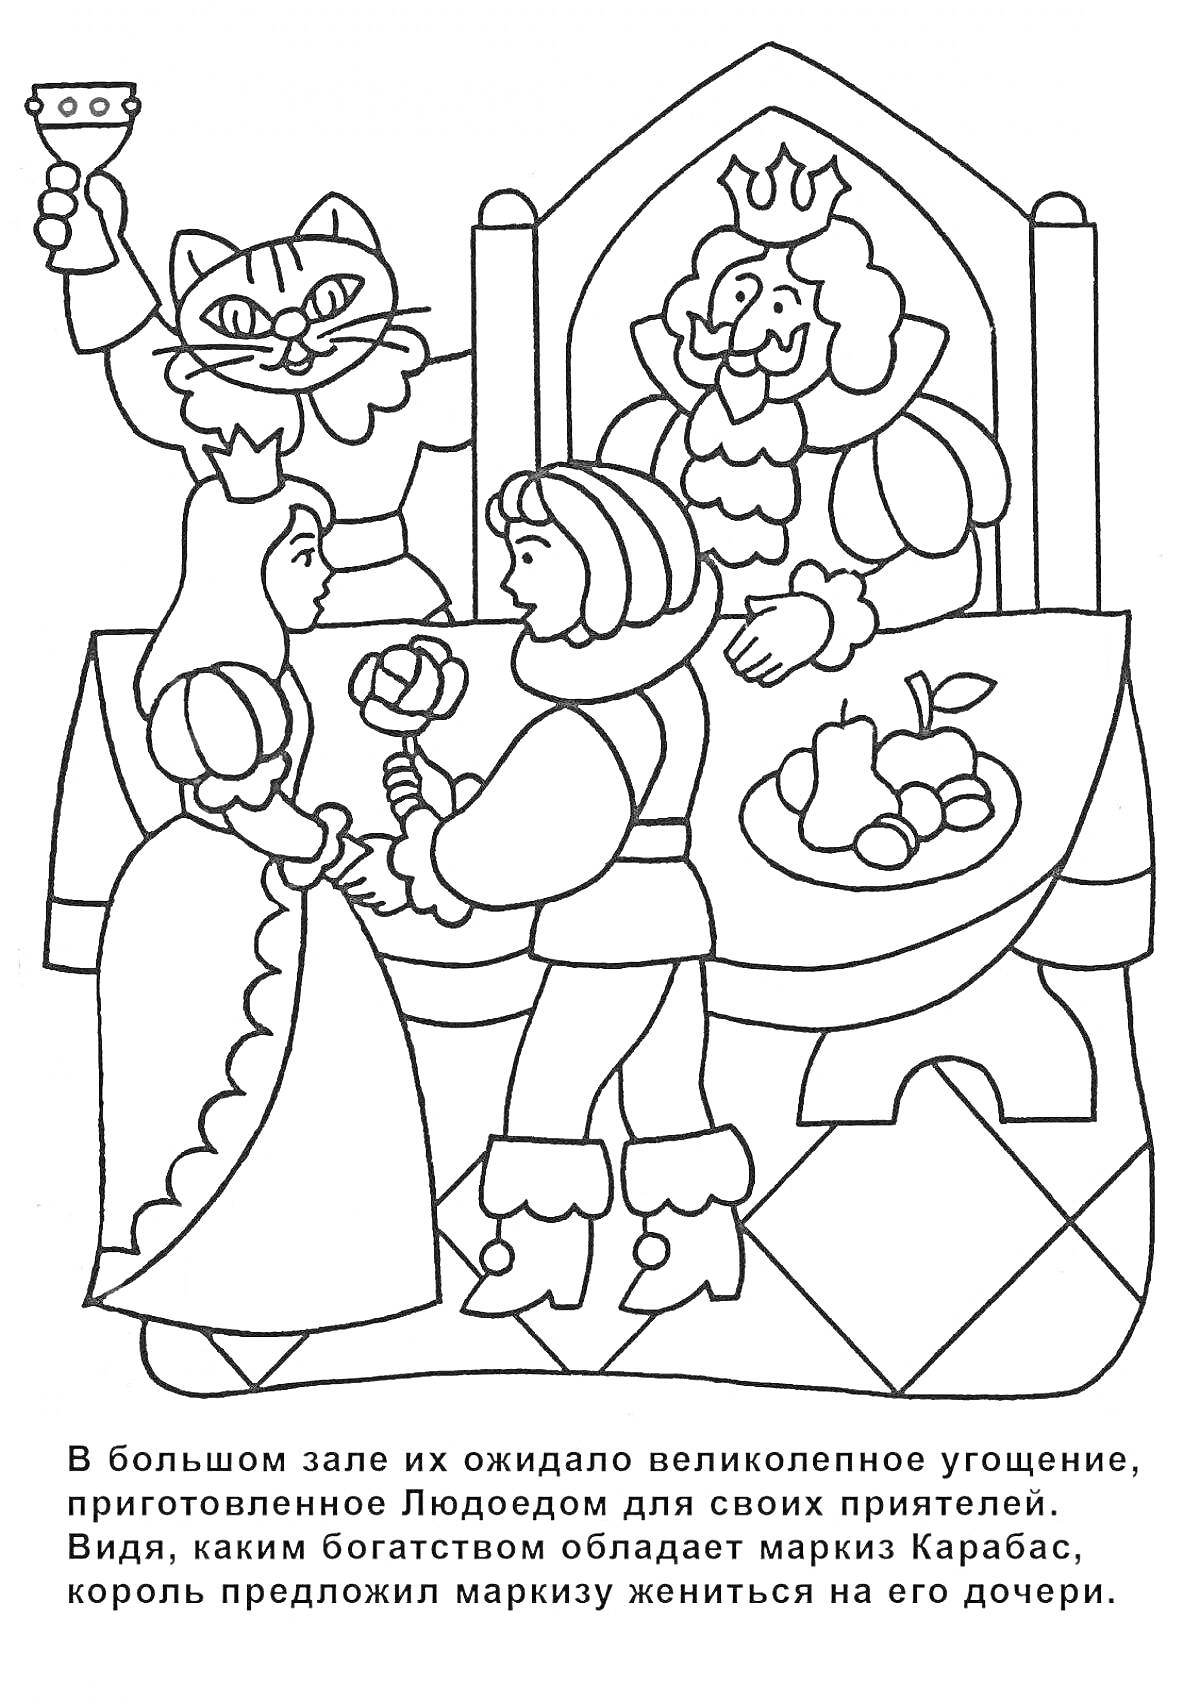 Раскраска Кот в сапогах, банкeт, король за столом, маркиз Карабас, принцесса, поднос с фруктами.